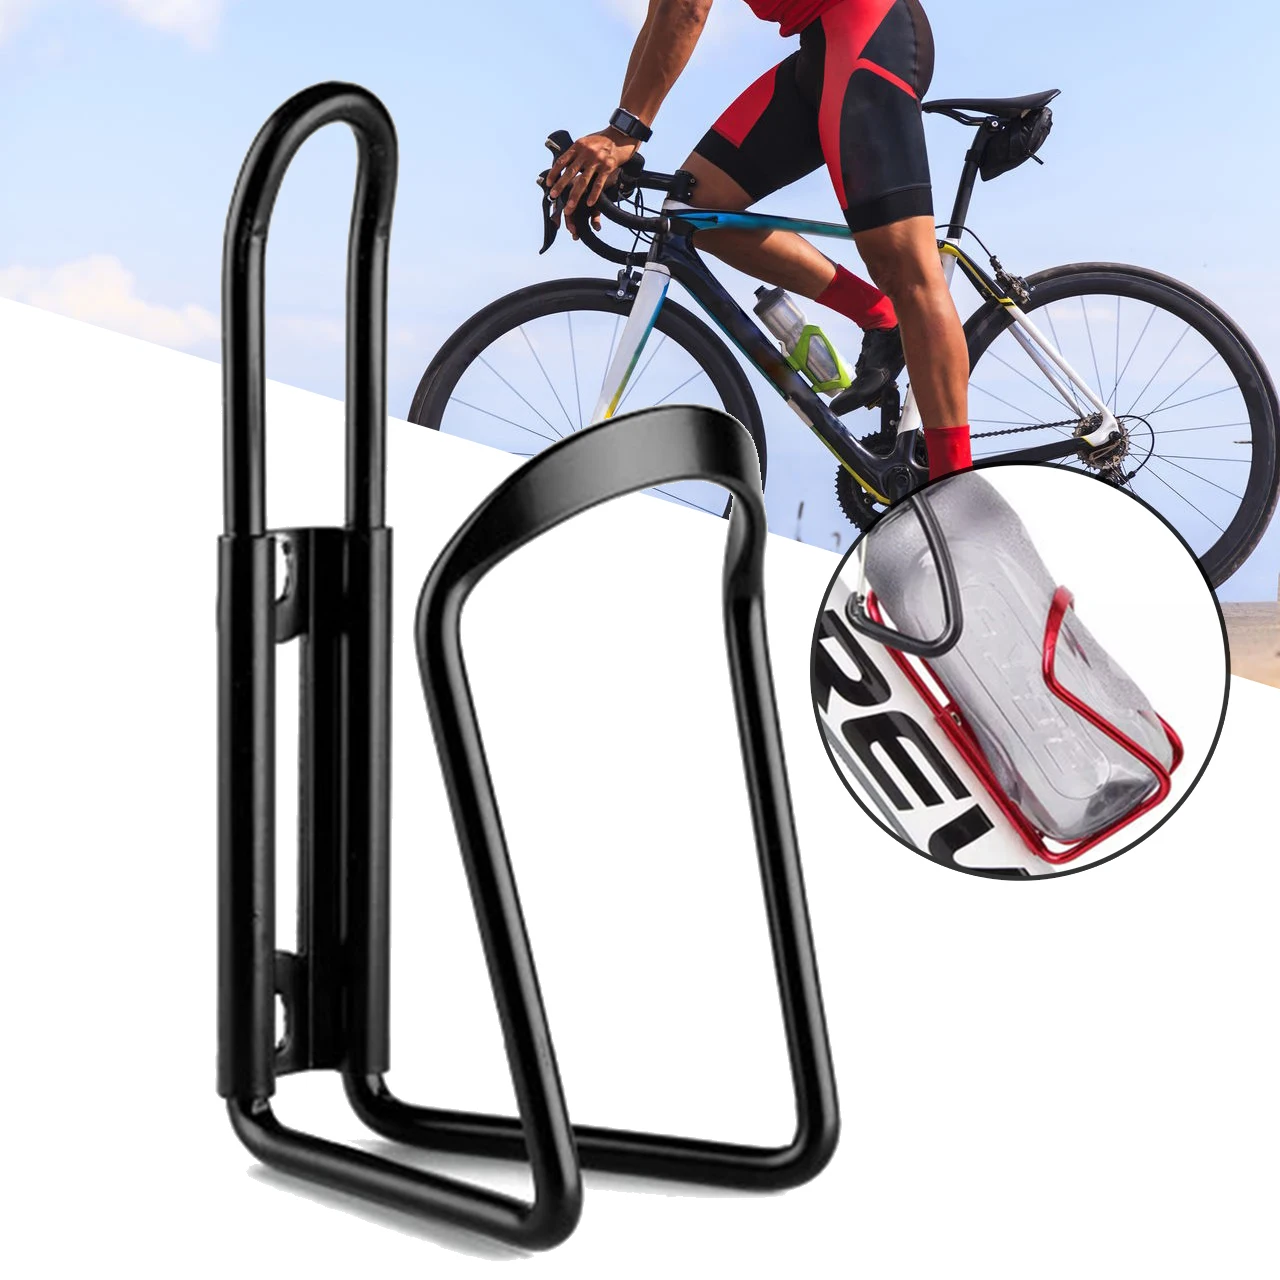 Bicicleta Suport pentru Sticle Rack cu Adaptor Robust din Aliaj de Aluminiu Material pentru Camping, Drumeții, Călărie Călătorie